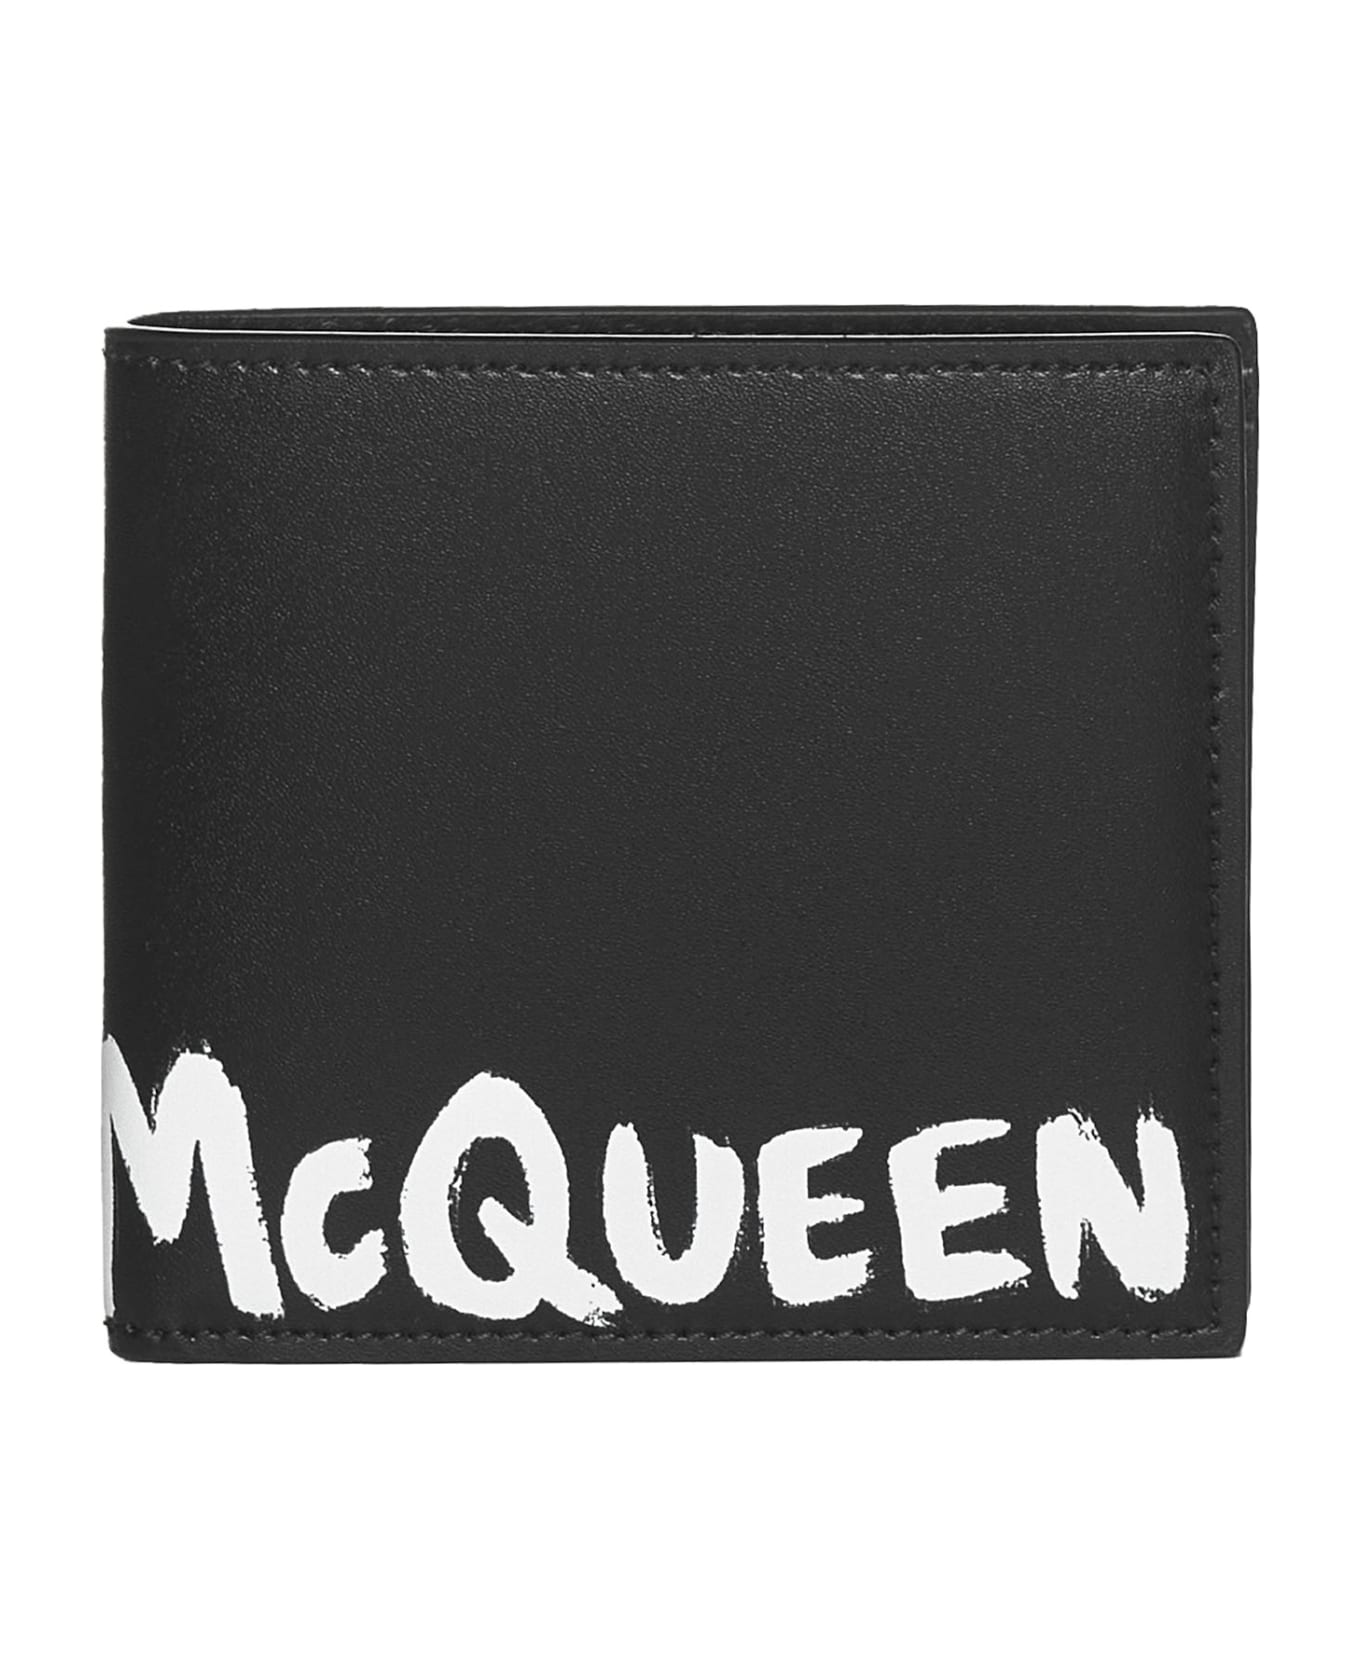 Alexander McQueen Bifold Wallet - Nero 財布